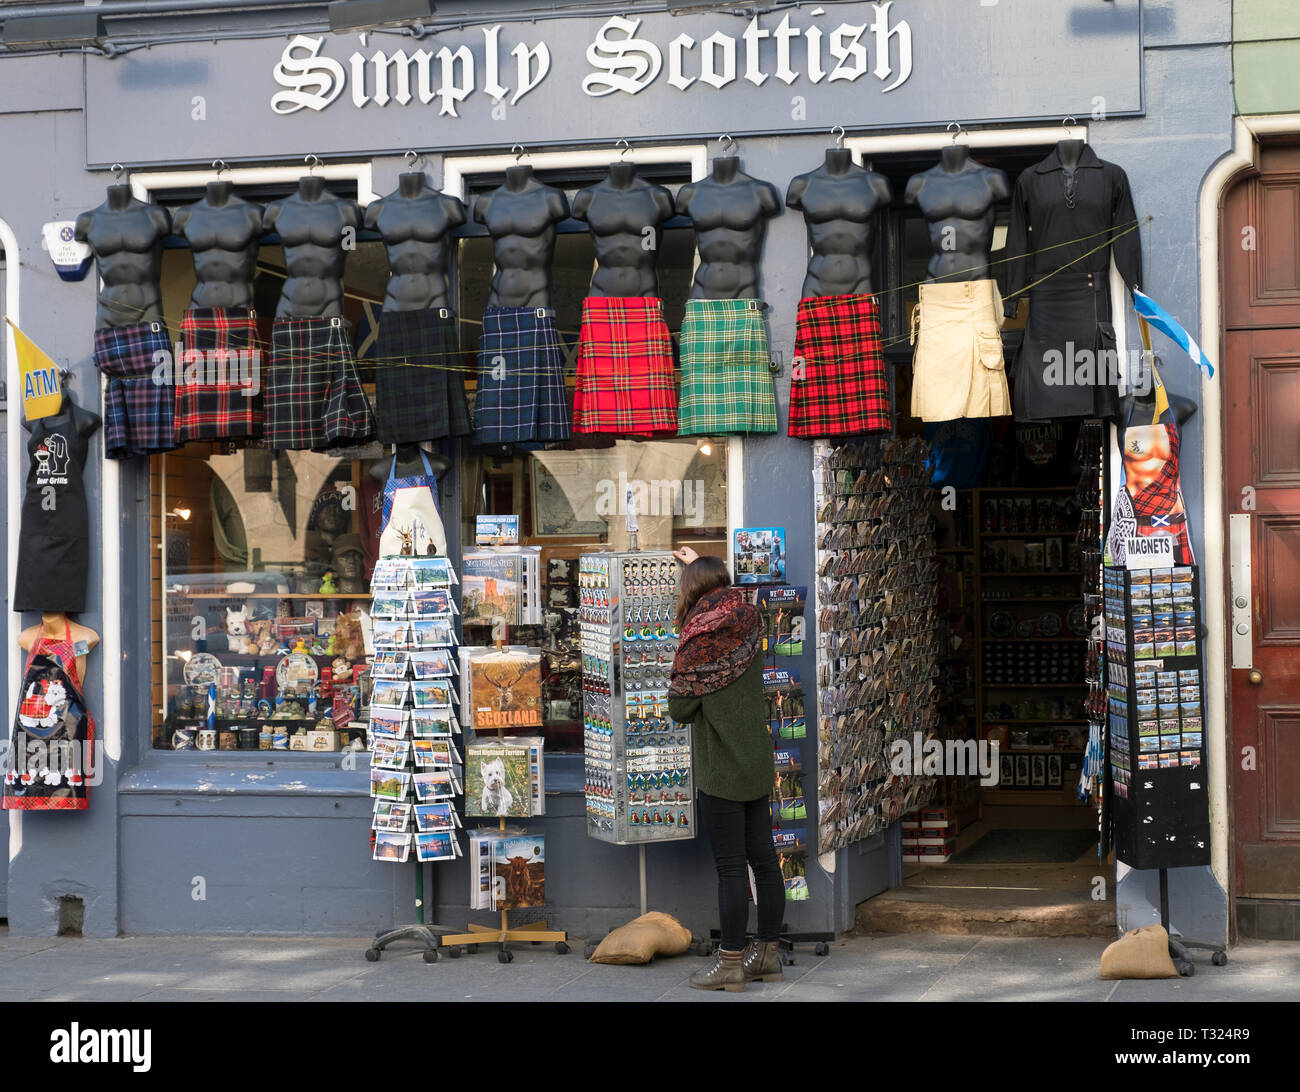 Einfach schottischen Souvenirshop auf der Royal Mile, Edinburgh. Stockfoto